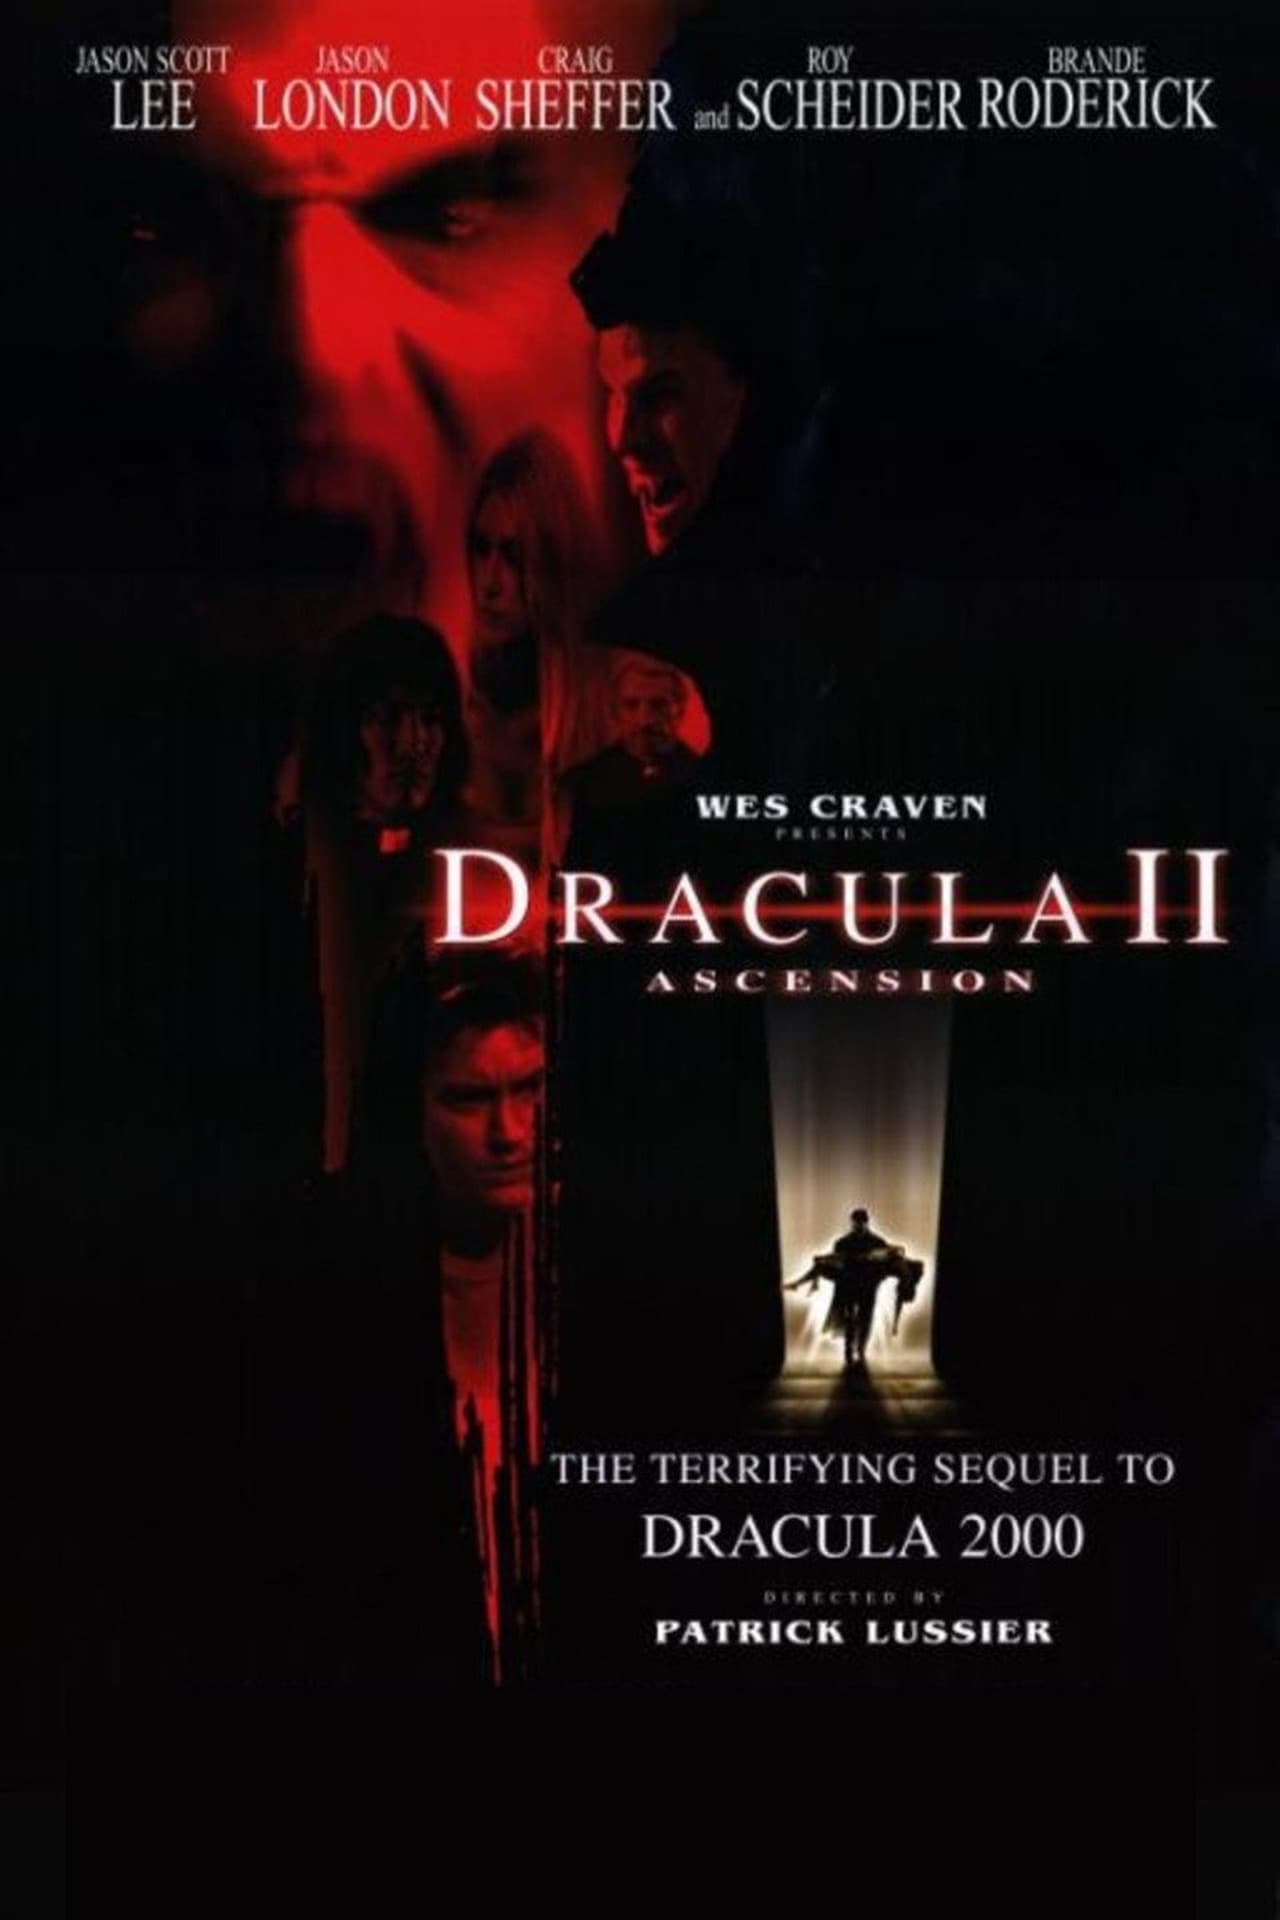 Dracula II: Ascension (2003) 448Kbps 23.976Fps 48Khz 5.1Ch DVD Turkish Audio TAC